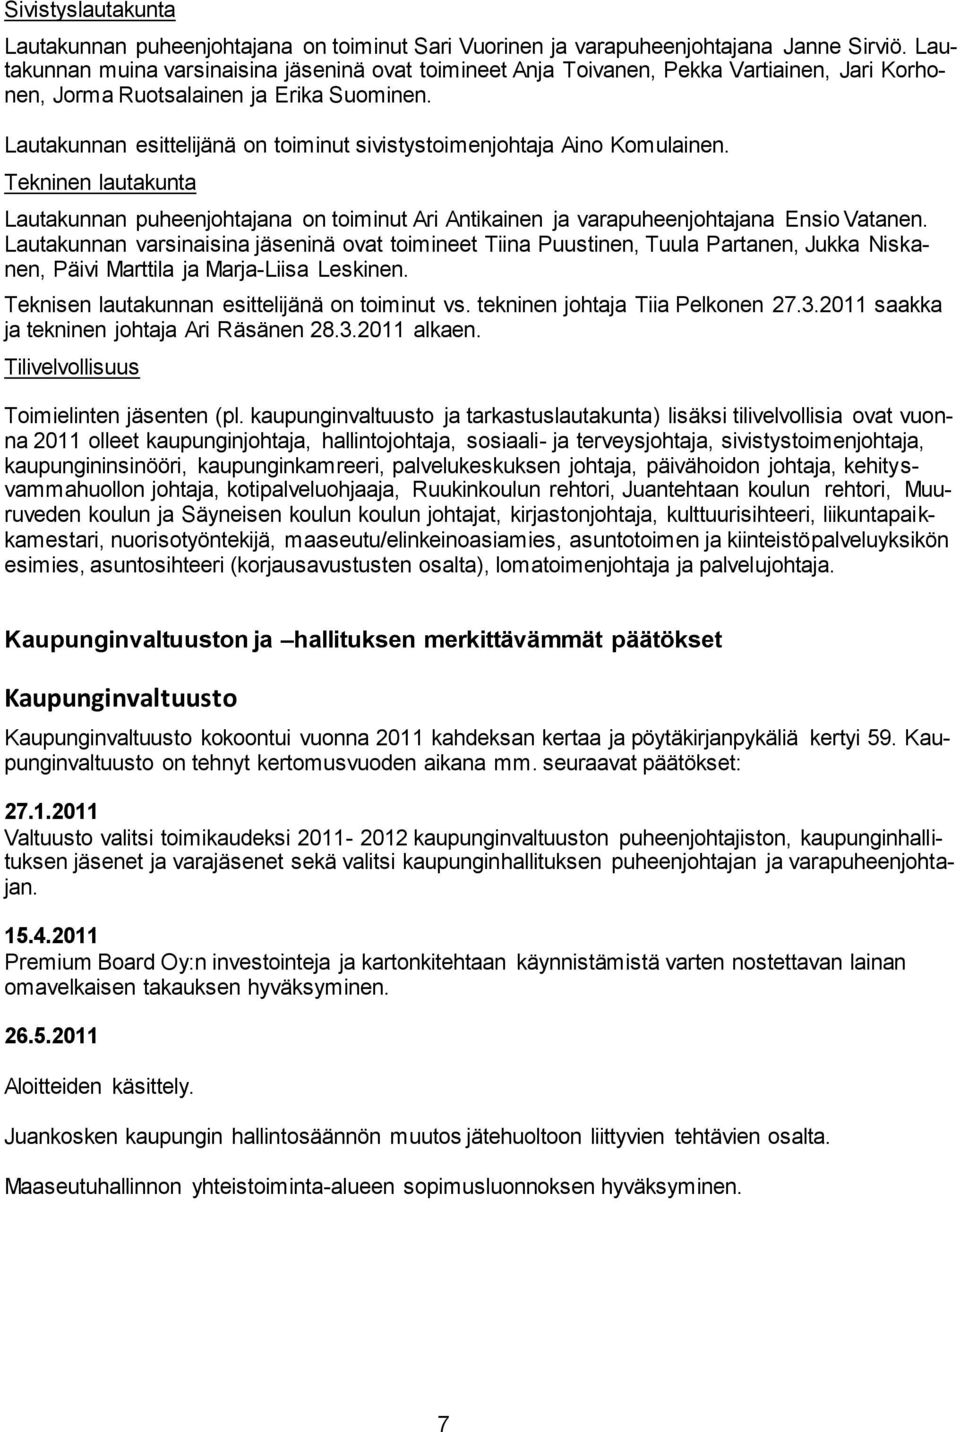 Lautakunnan esittelijänä on toiminut sivistystoimenjohtaja Aino Komulainen. Tekninen lautakunta Lautakunnan puheenjohtajana on toiminut Ari Antikainen ja varapuheenjohtajana Ensio Vatanen.